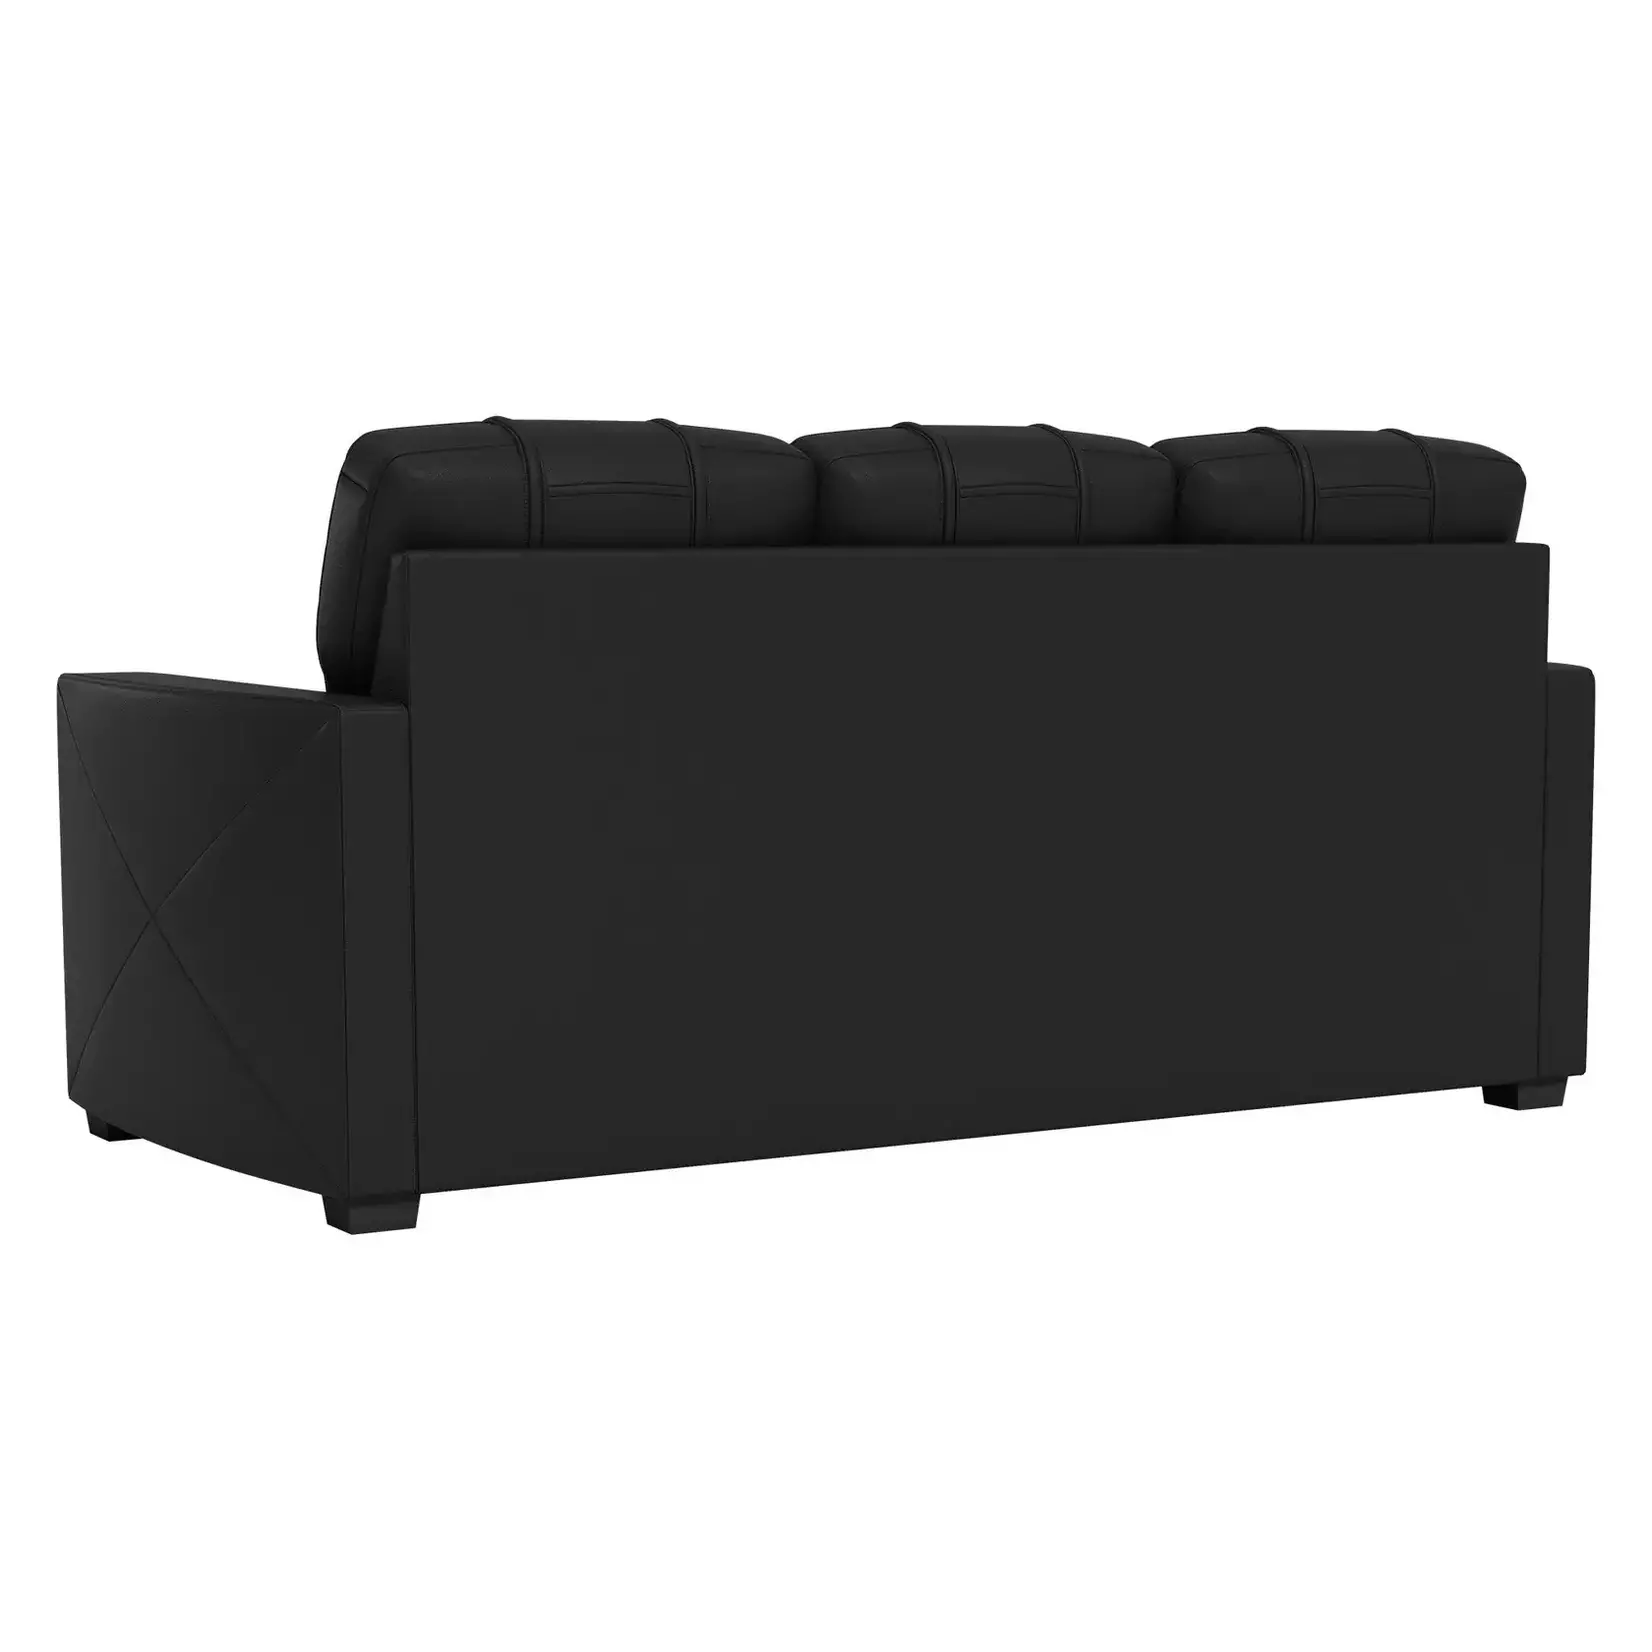 DreamSeat Stationary Sofa